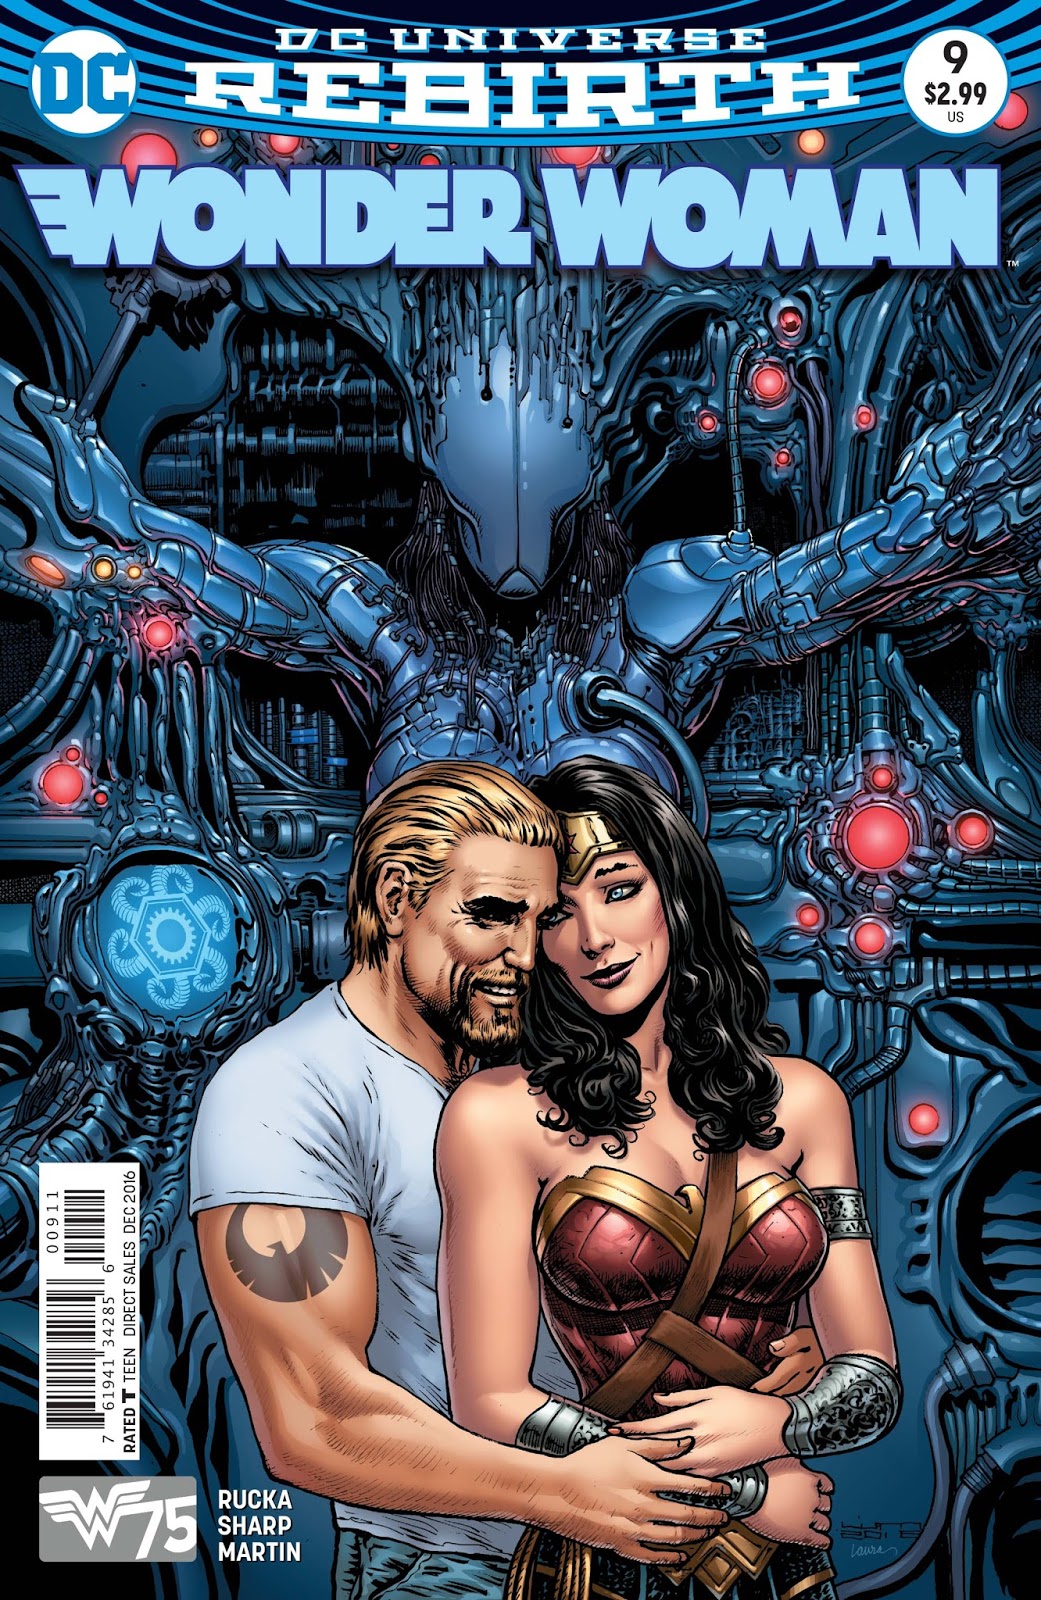 Weird Science DC Comics: PREVIEW: Wonder Woman #9